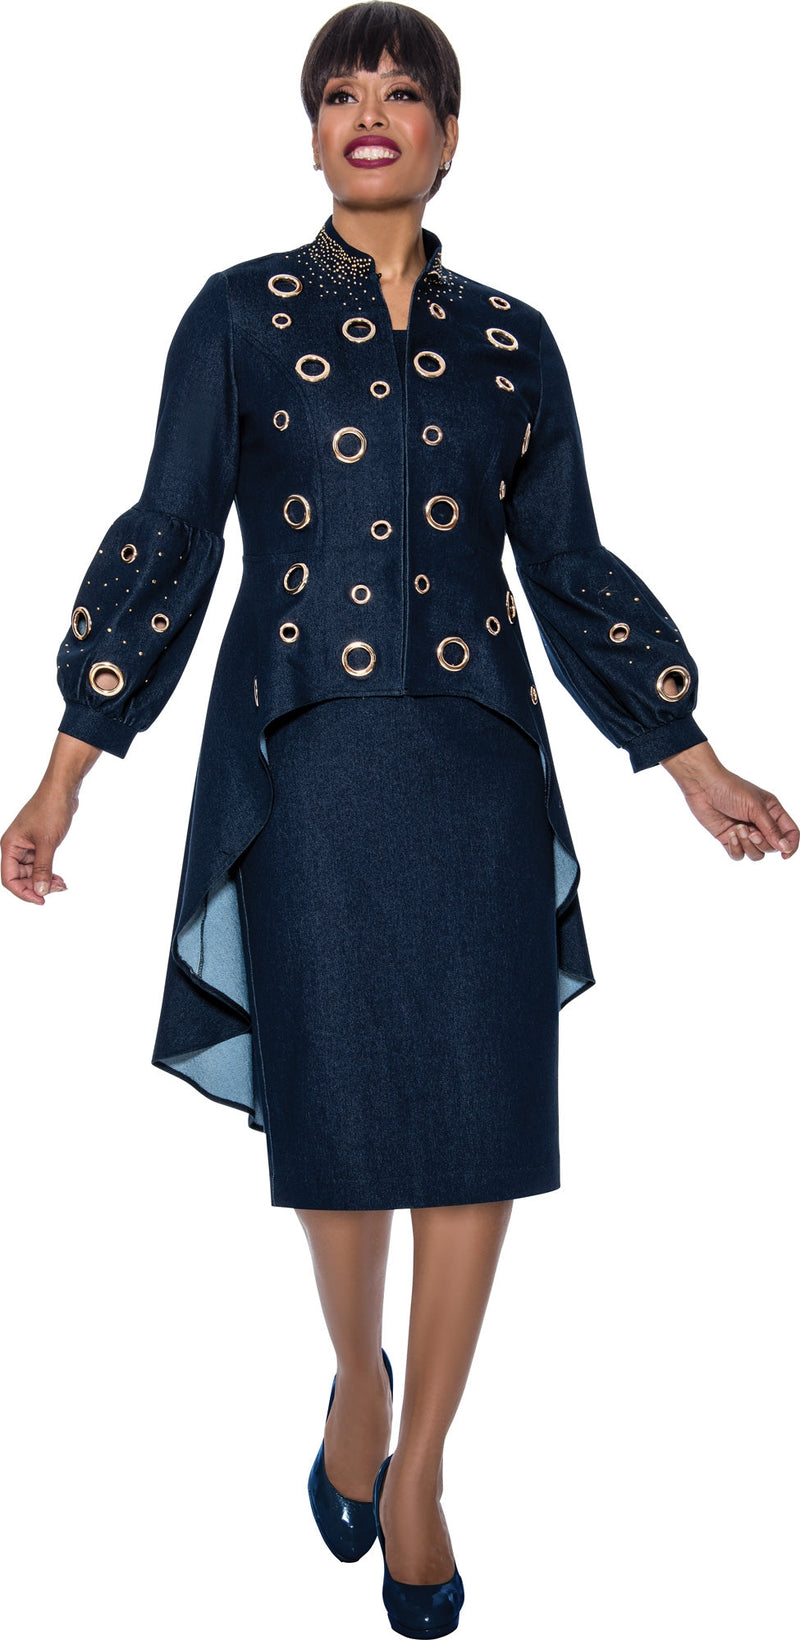 Devine Sport Denim Skirt Suit 63882 - Church Suits For Less